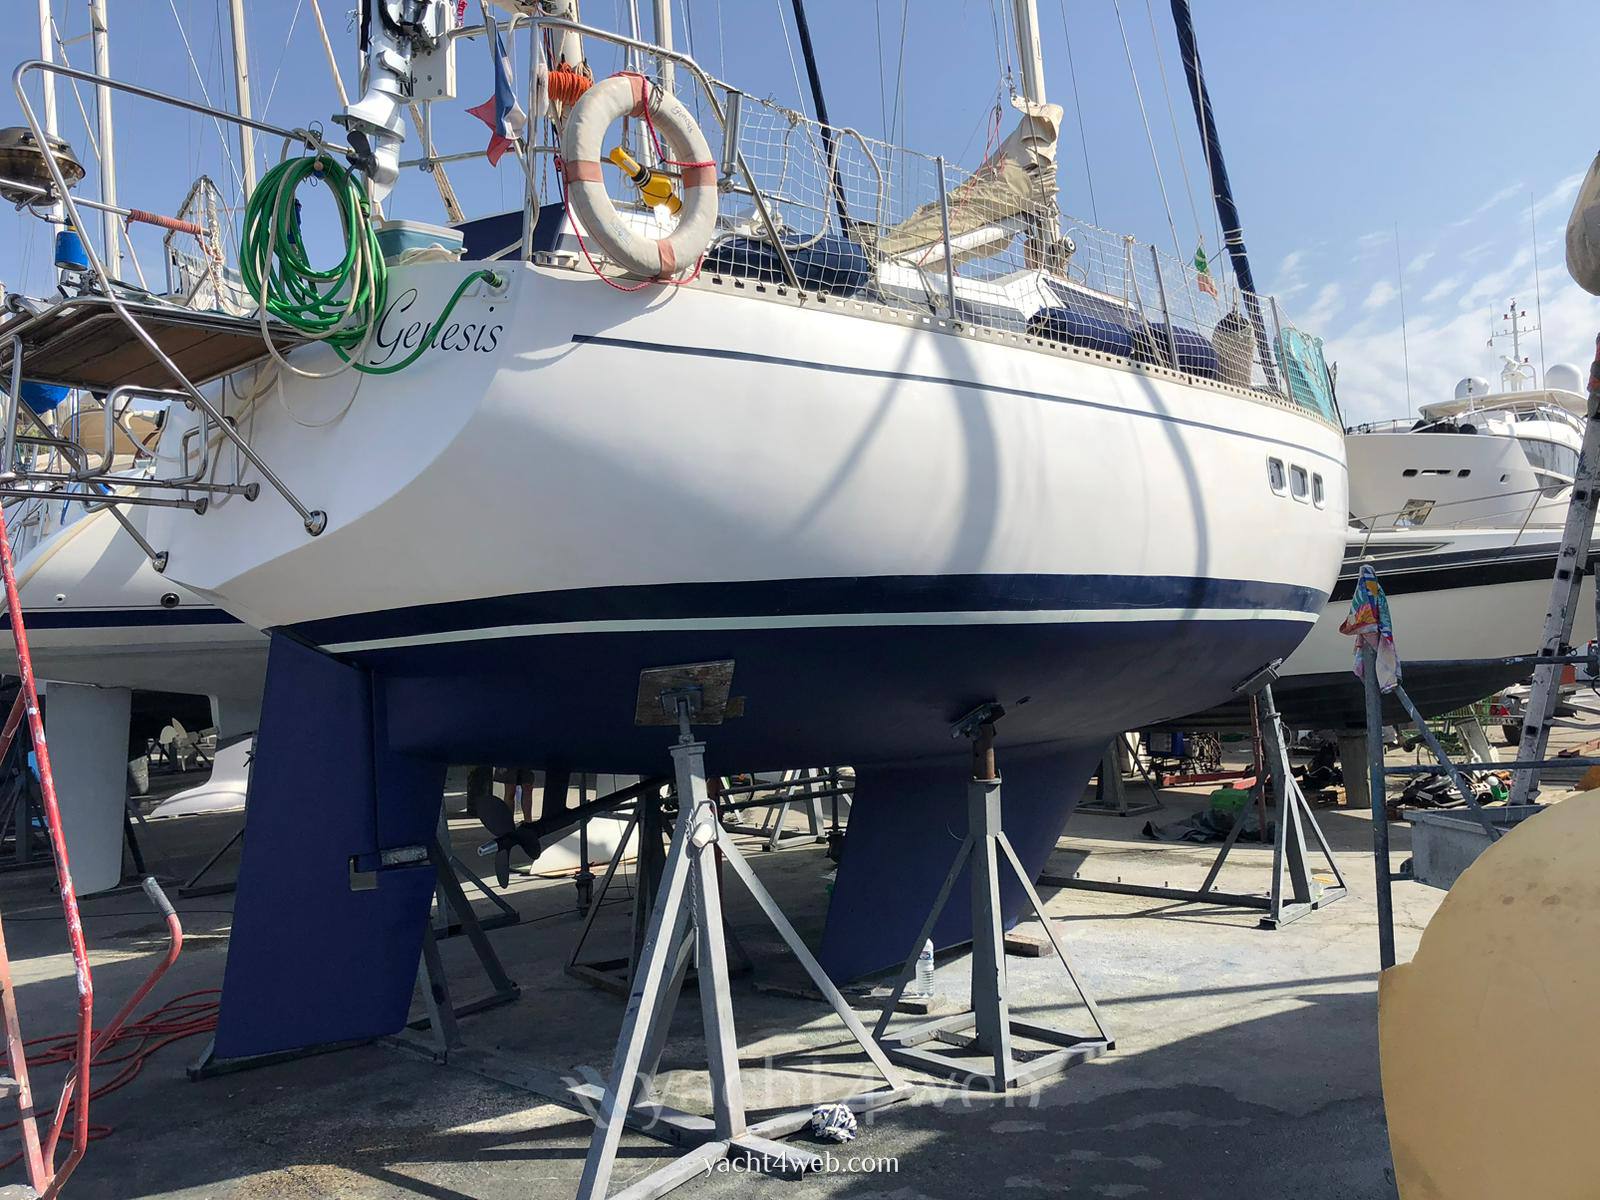 RPD 36 ketch stefini Segelboot gebraucht zum Verkauf